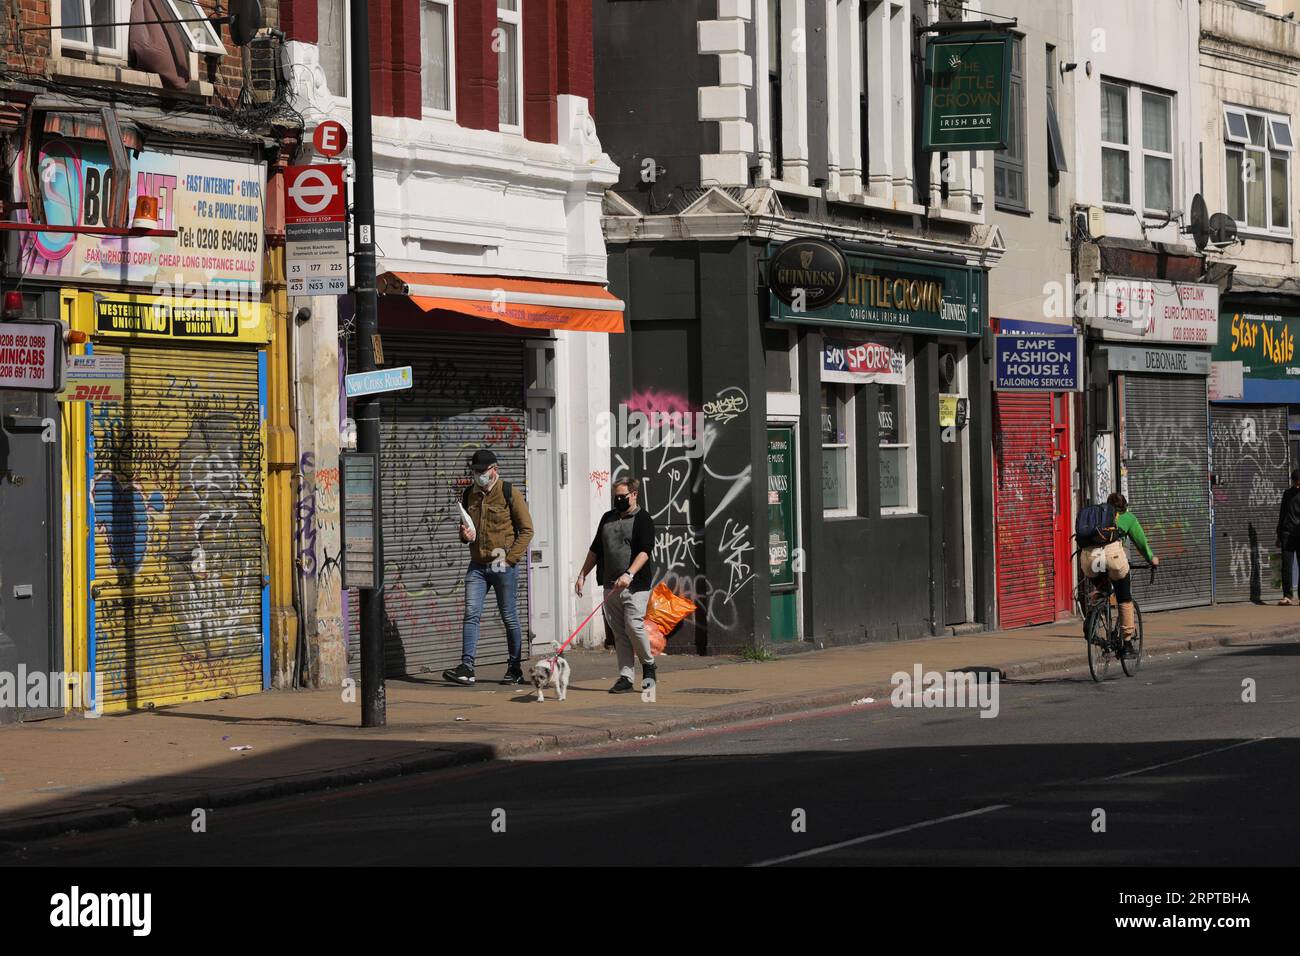 200413 -- LONDON, 13. April 2020 Xinhua -- Foto aufgenommen am 13. April 2020 zeigt einen allgemeinen Blick auf geschlossene Geschäftsräume an der New Cross Road in London, Großbritannien. Das Bruttoinlandsprodukt Großbritanniens könnte im zweiten Quartal unter der COVID-19-Pandemie um 25 bis 30 Prozent sinken, sagte der britische Finanzminister Rishi Sunak am Wochenende, laut lokalen Medienberichten. Foto von Tim Ireland/Xinhua BRITAIN-LONDON-COVID-19-ECONOMY PUBLICATIONxNOTxINxCHN Stockfoto